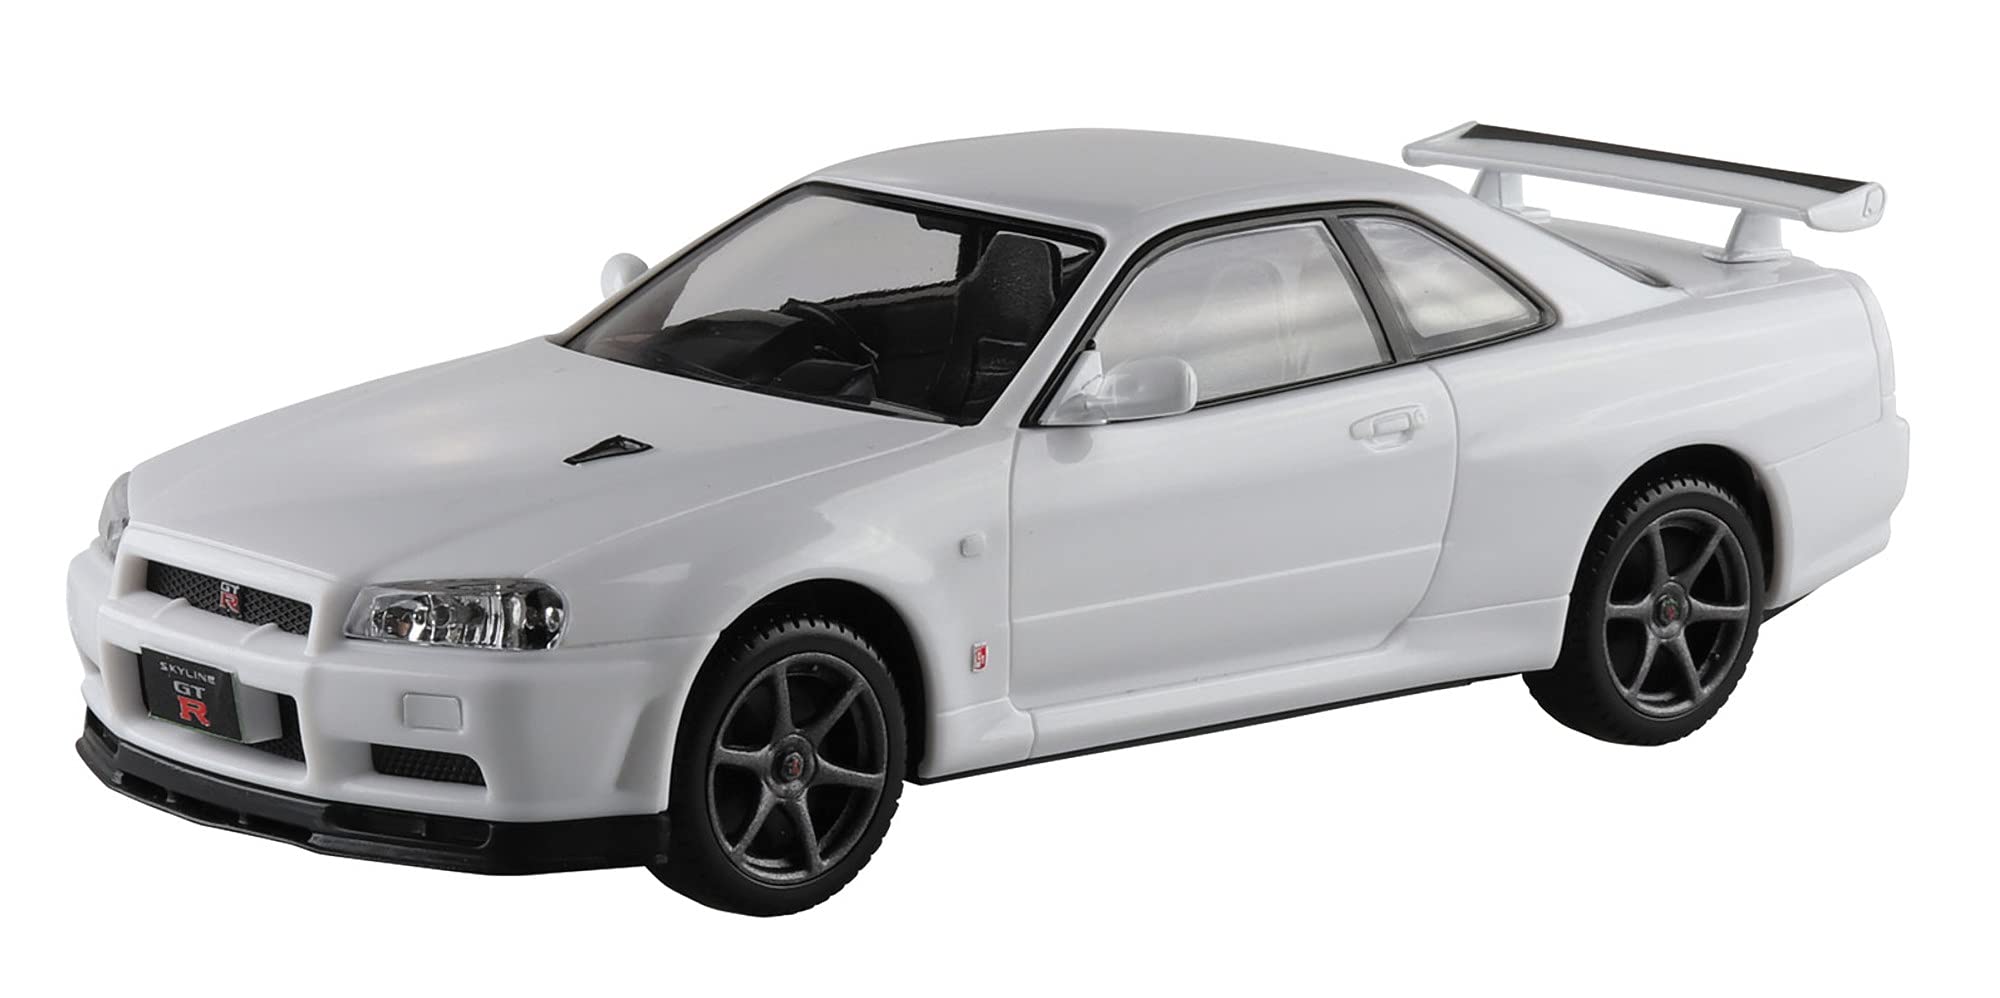 The Snap Kit 1/32 Nissan R34 Skyline GT-R White Plastic Model